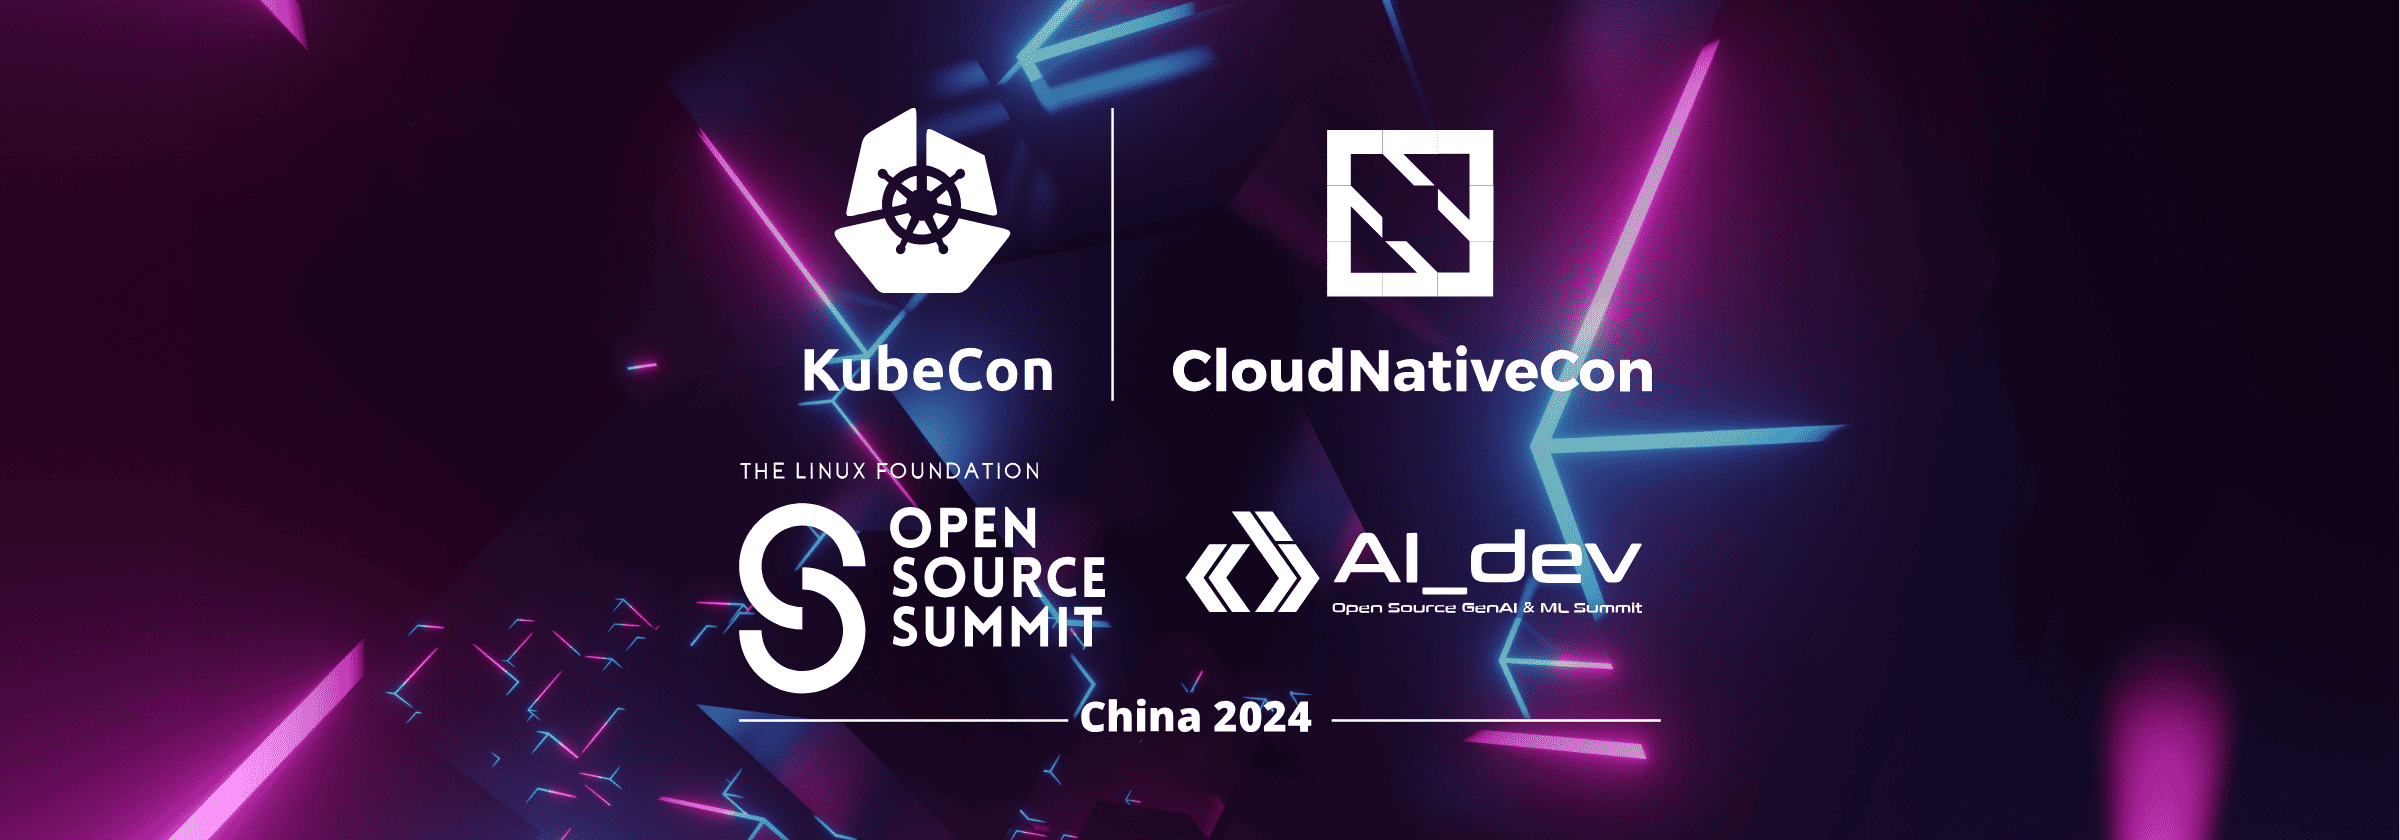 KubeCon + CloudNativeCon + Open Source Summit + AI_dev China 2024